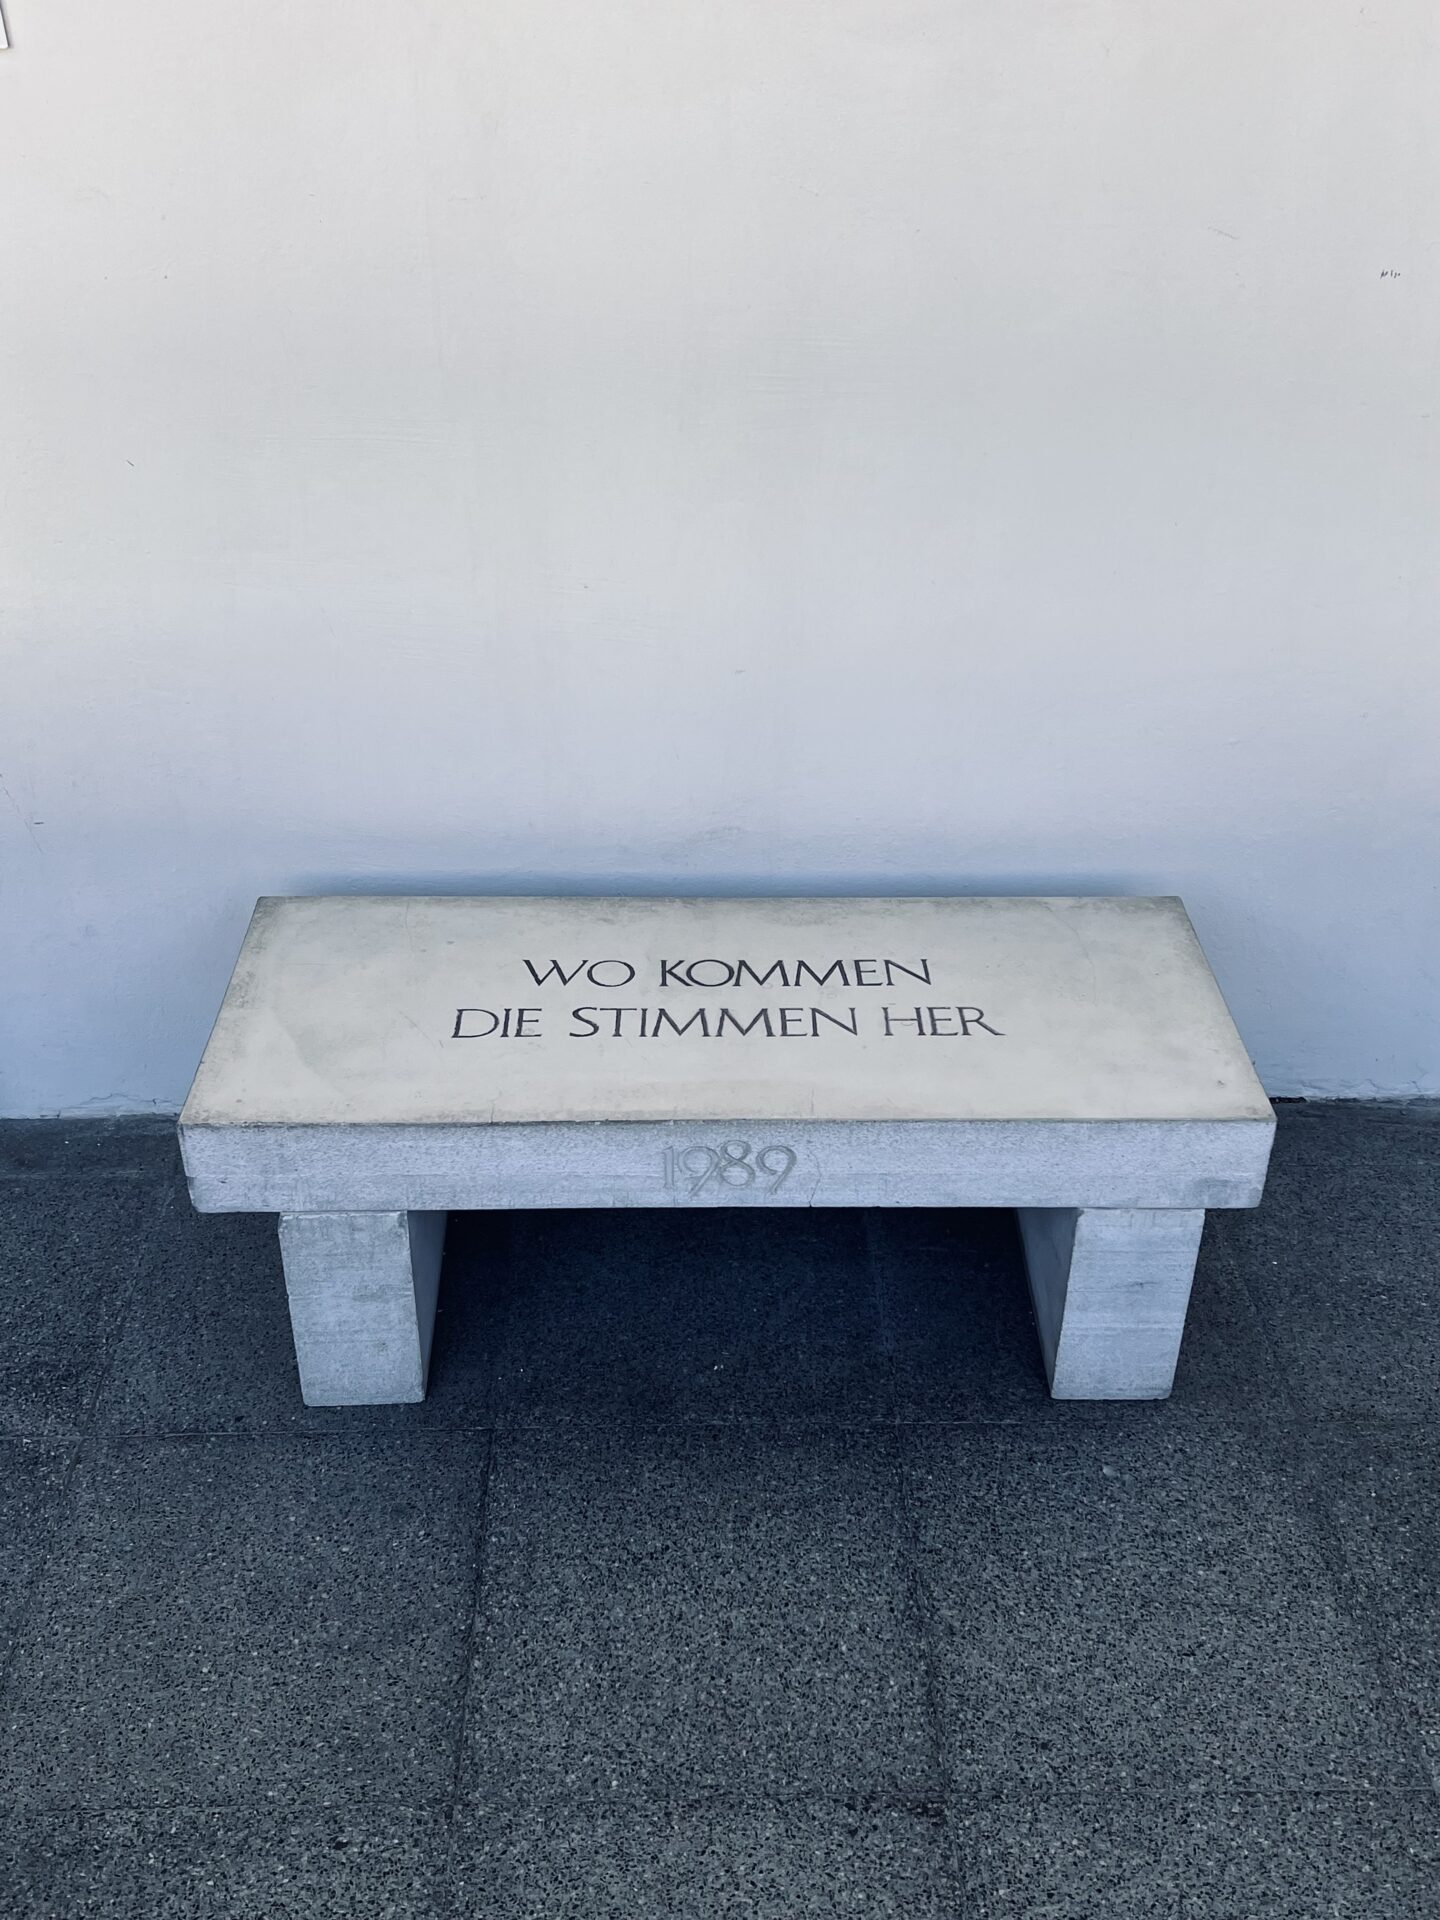 Sitzbank aus Beton mit der Inschrift "Wo kommen die Stimmen her"